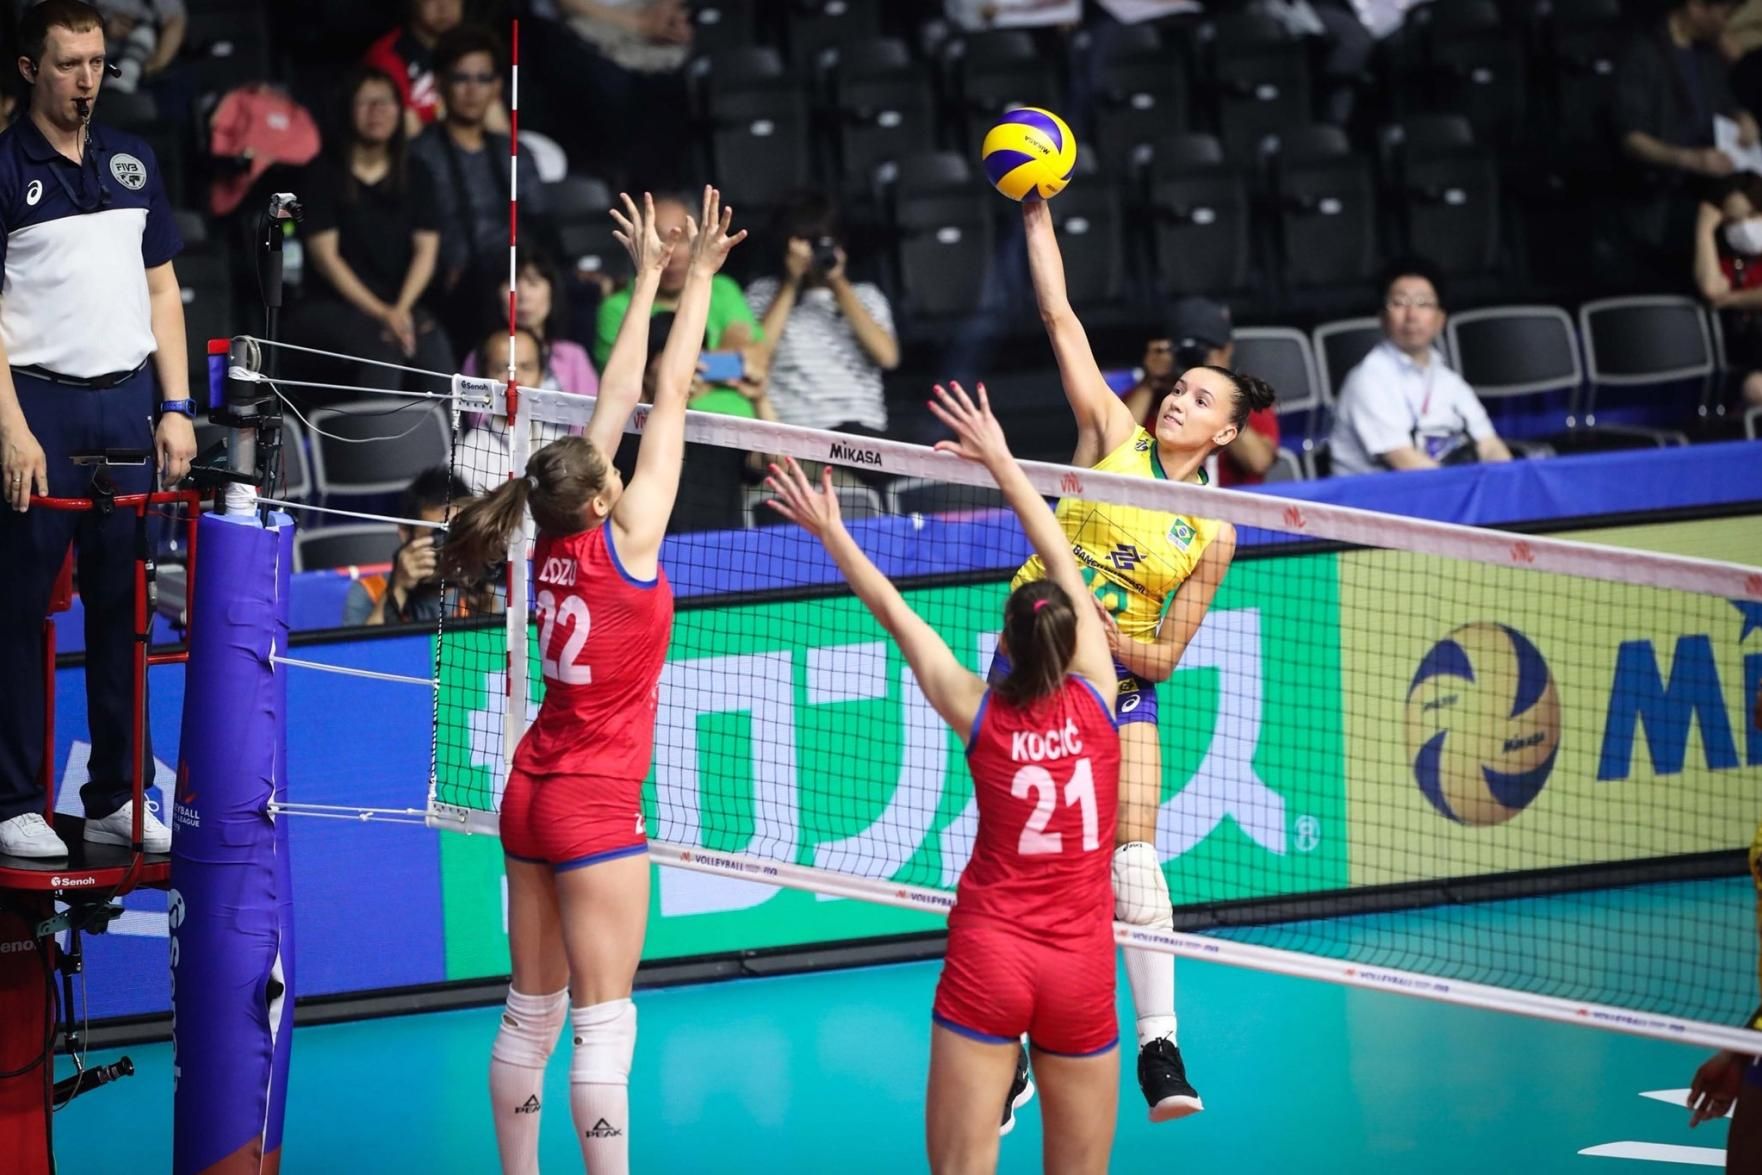 Brasil vence dominicanas no tie-break, e vôlei feminino garante vaga em  Tóquio 2020, vôlei